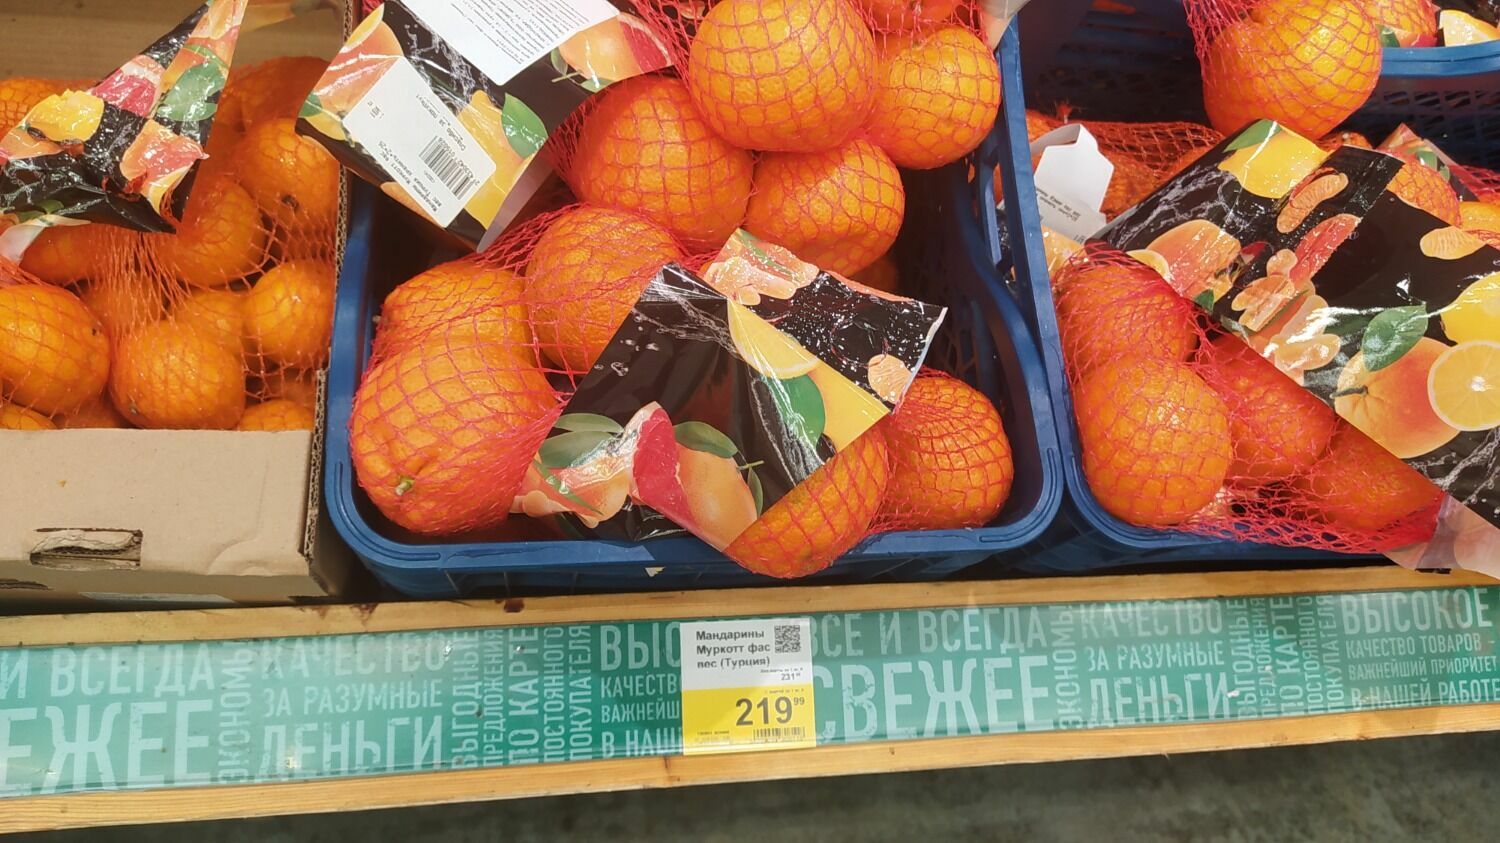 Расфасованные мандарины Муркотт в волгоградской «Ленте» стоят 219,99 руб. за 1 кг